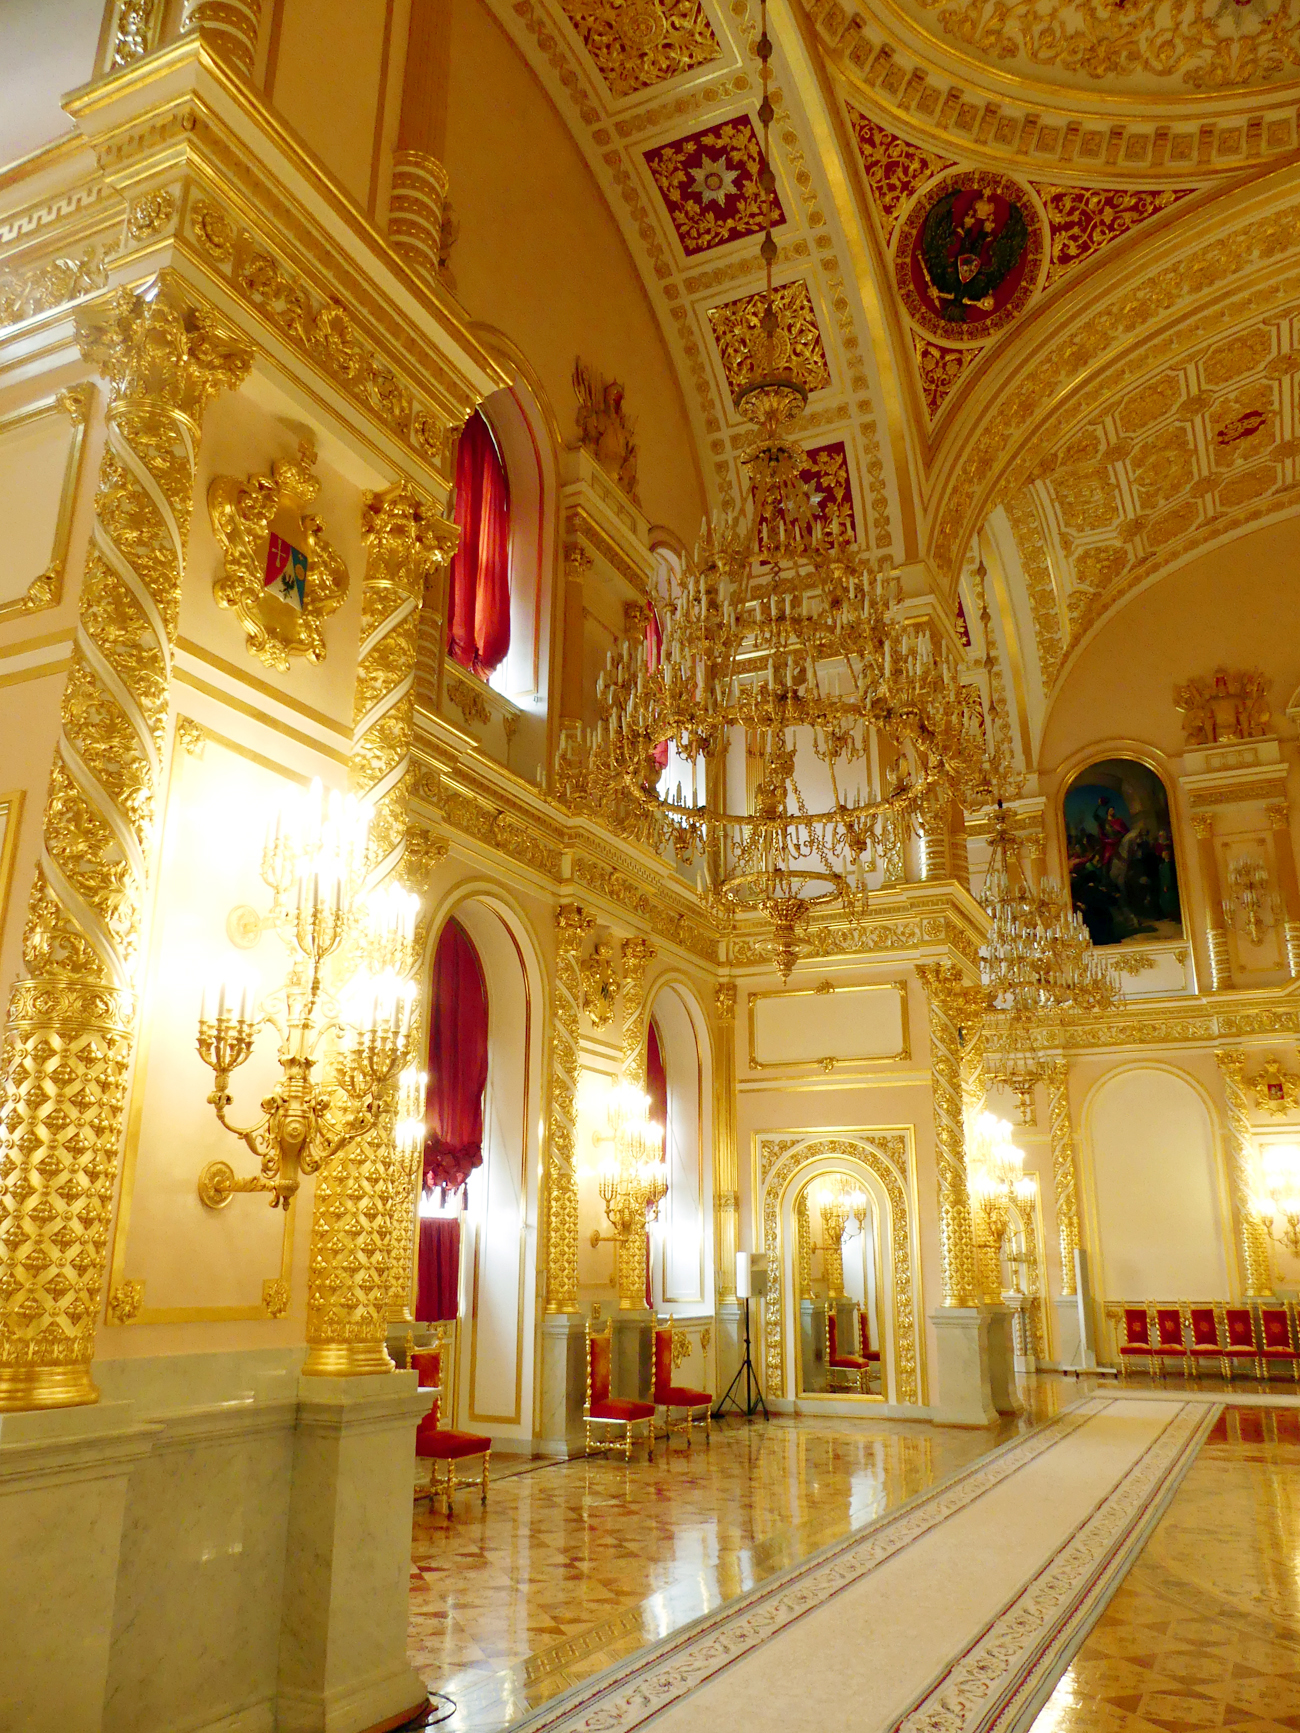 A escadaria de honra conduz a cinco salões solenes, denominados conforme as cinco ordens honoríficas russas: São Jorge, Santo André, Santo Aleksandr, São Vladímir e Santa Catarina.